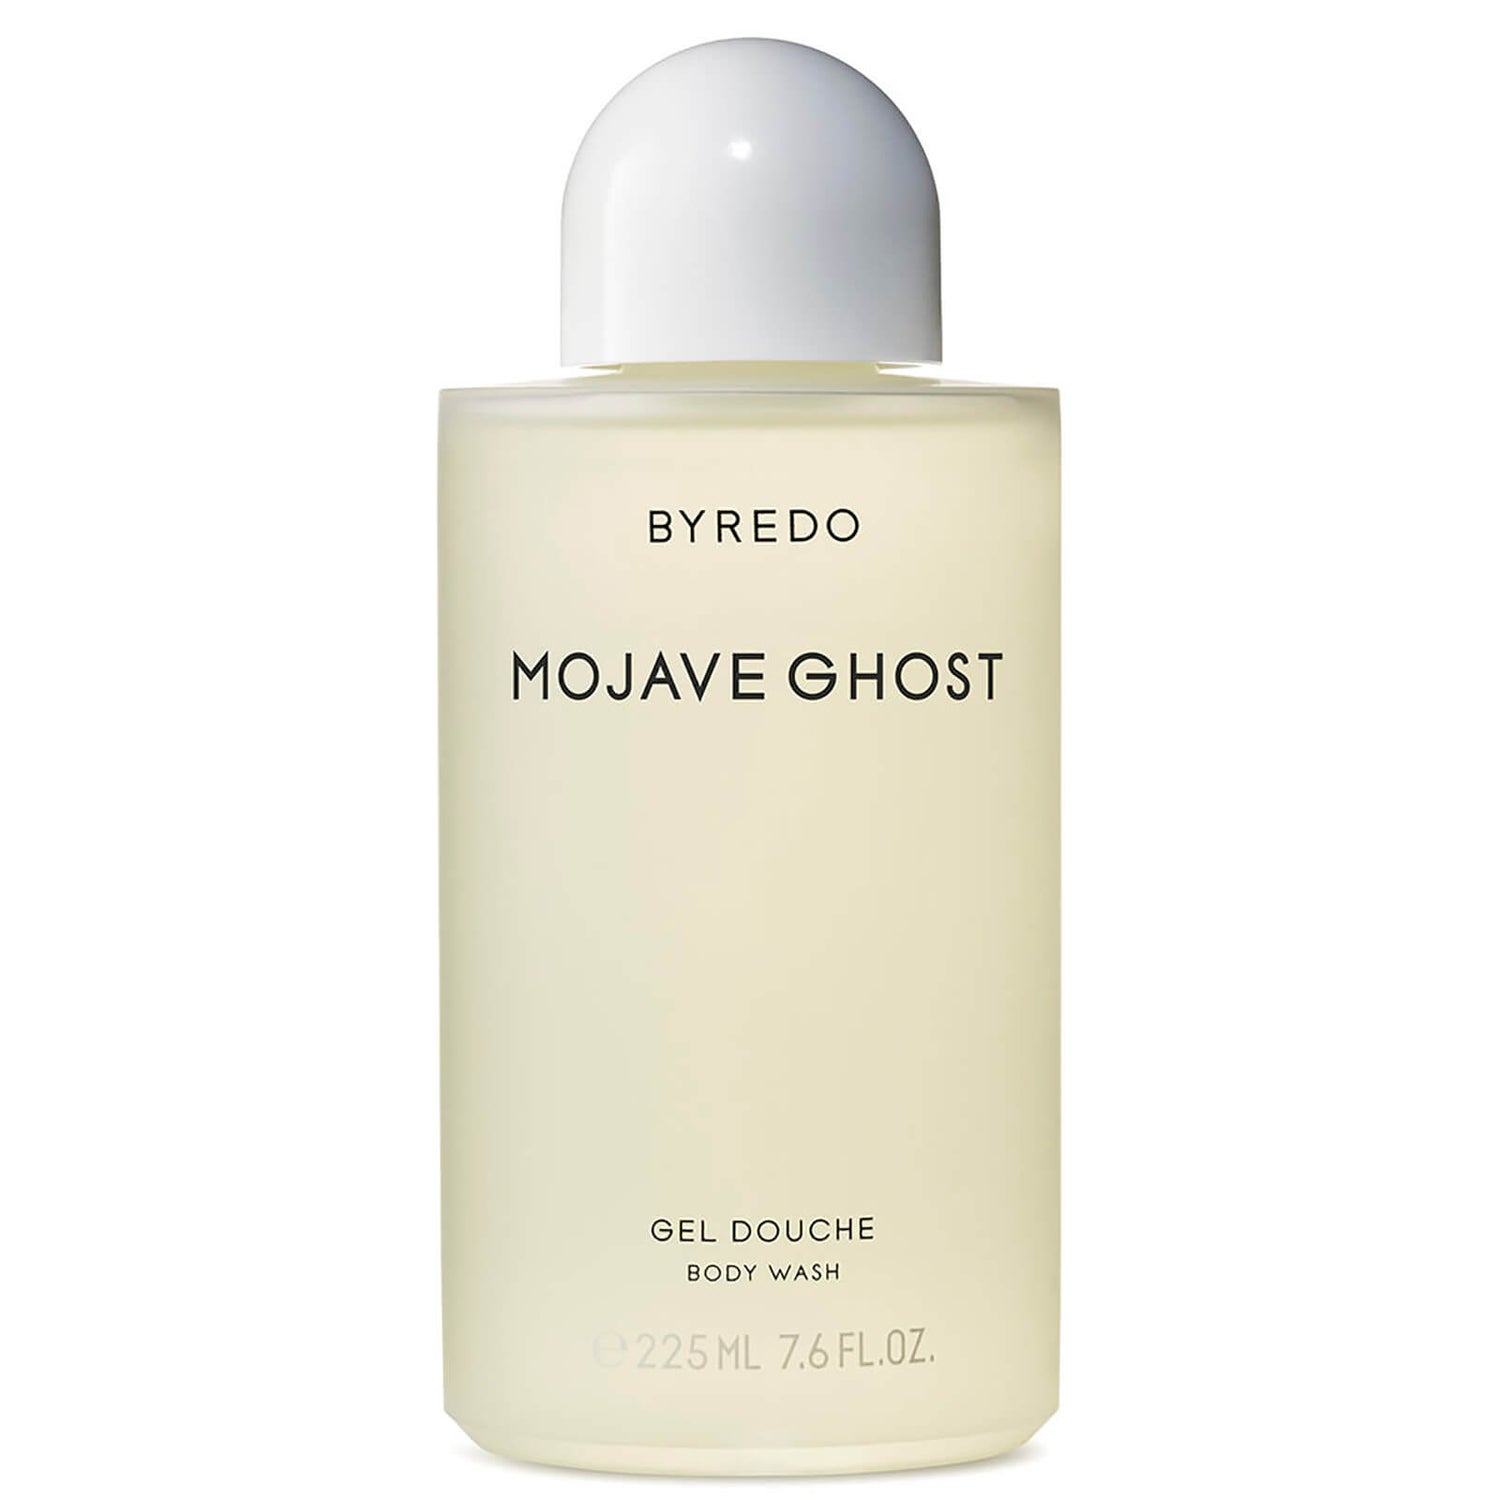 BYREDO Body Wash Mojave Ghost 225ml | Cult Beauty